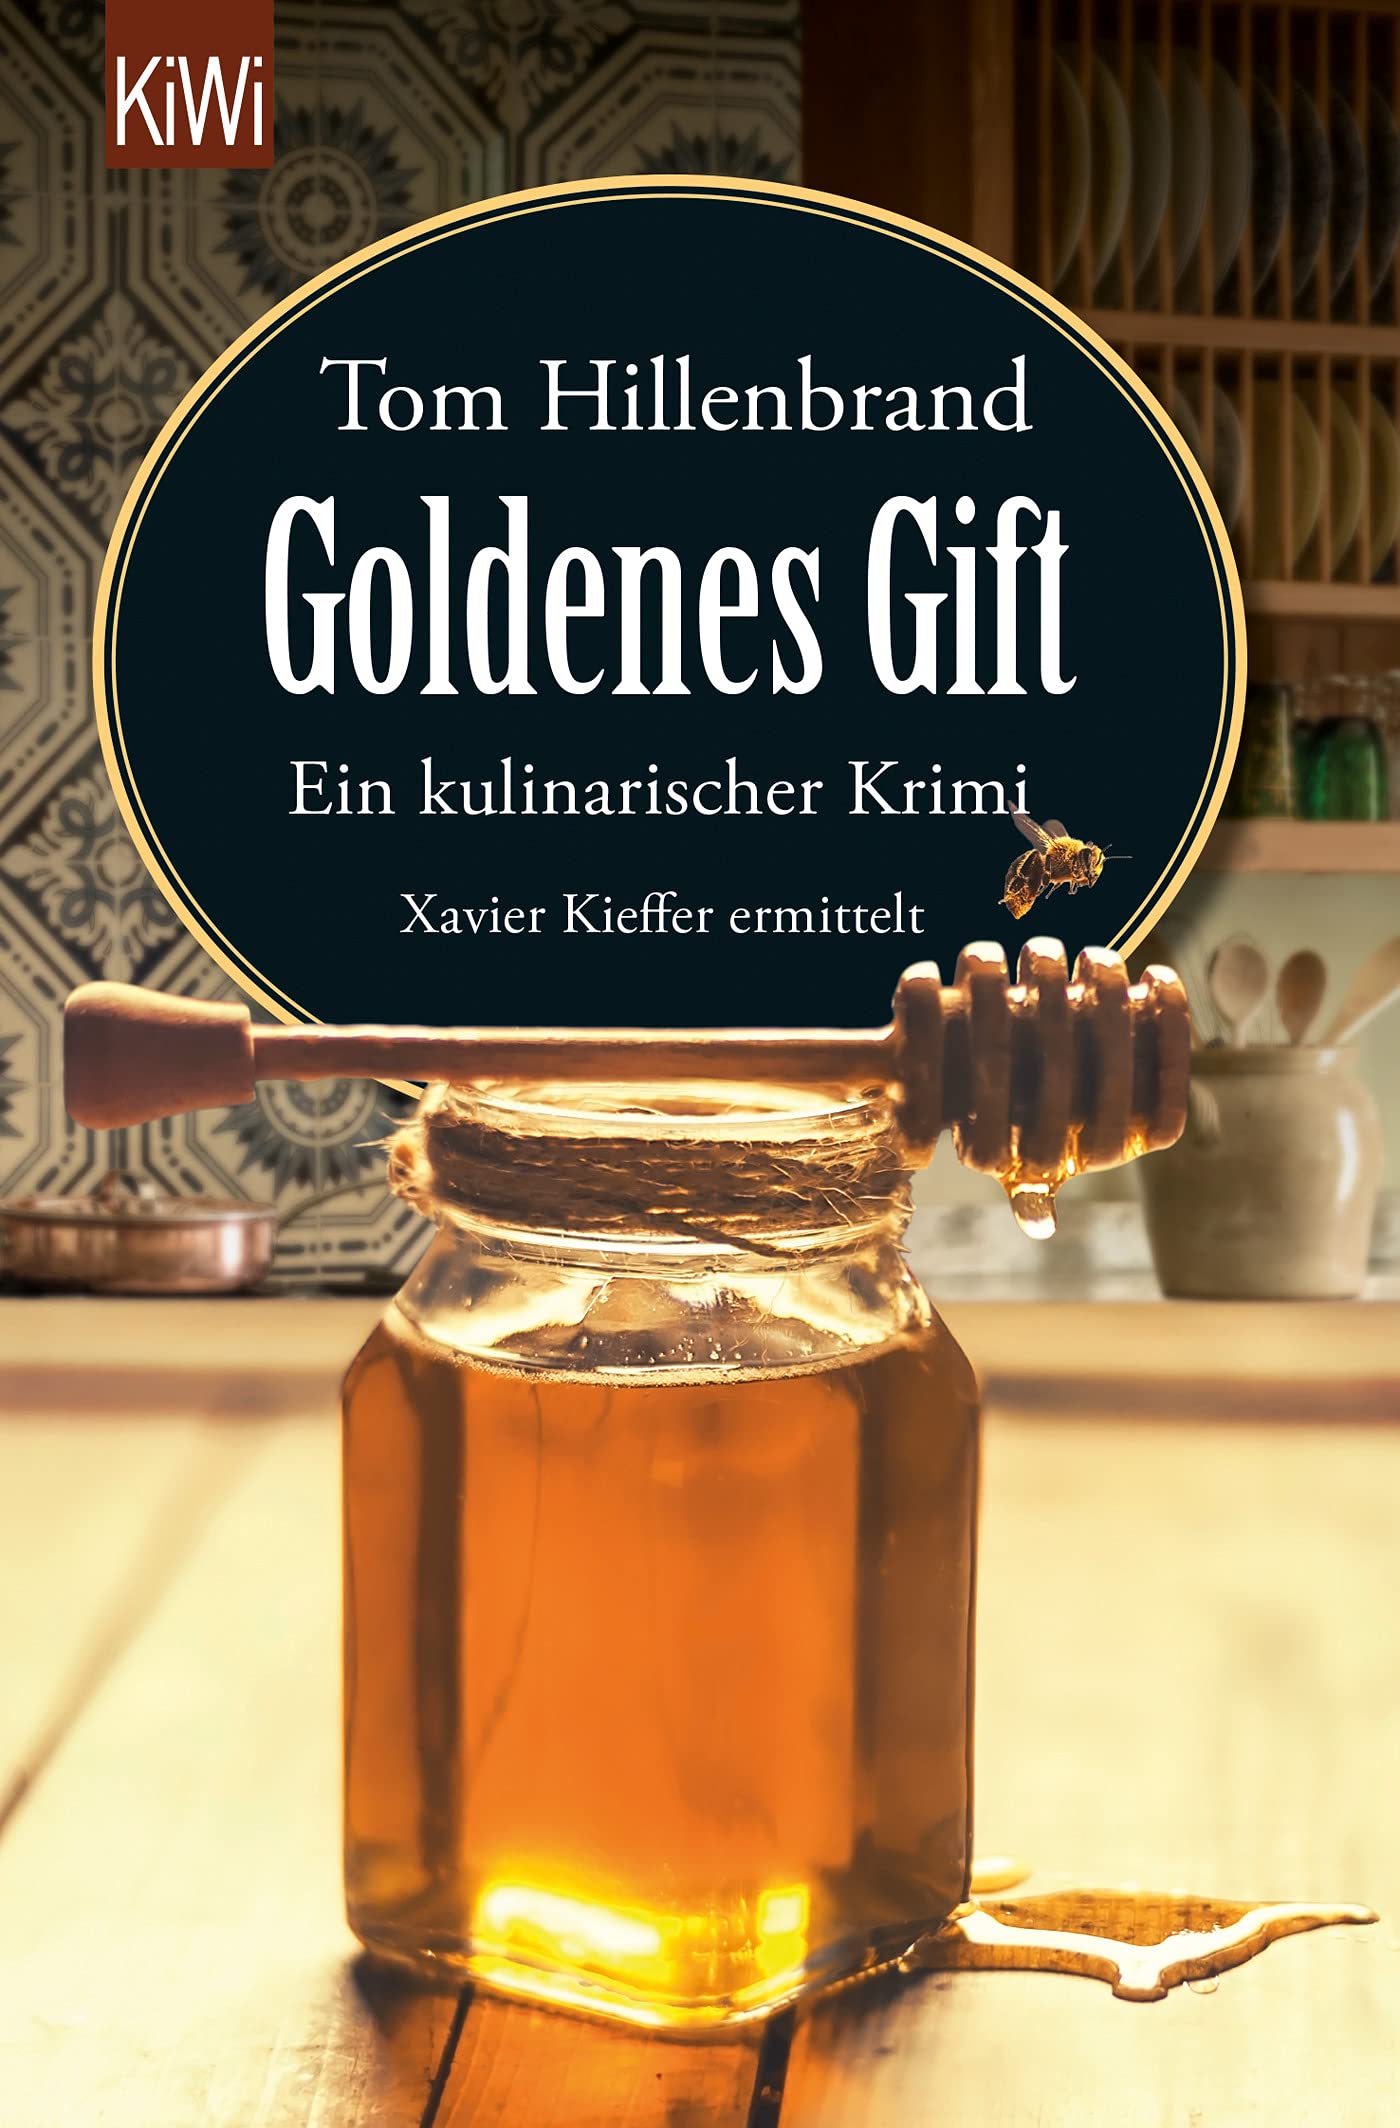 Buchcover „Goldenes Gift“ von Tom Hillenbrand